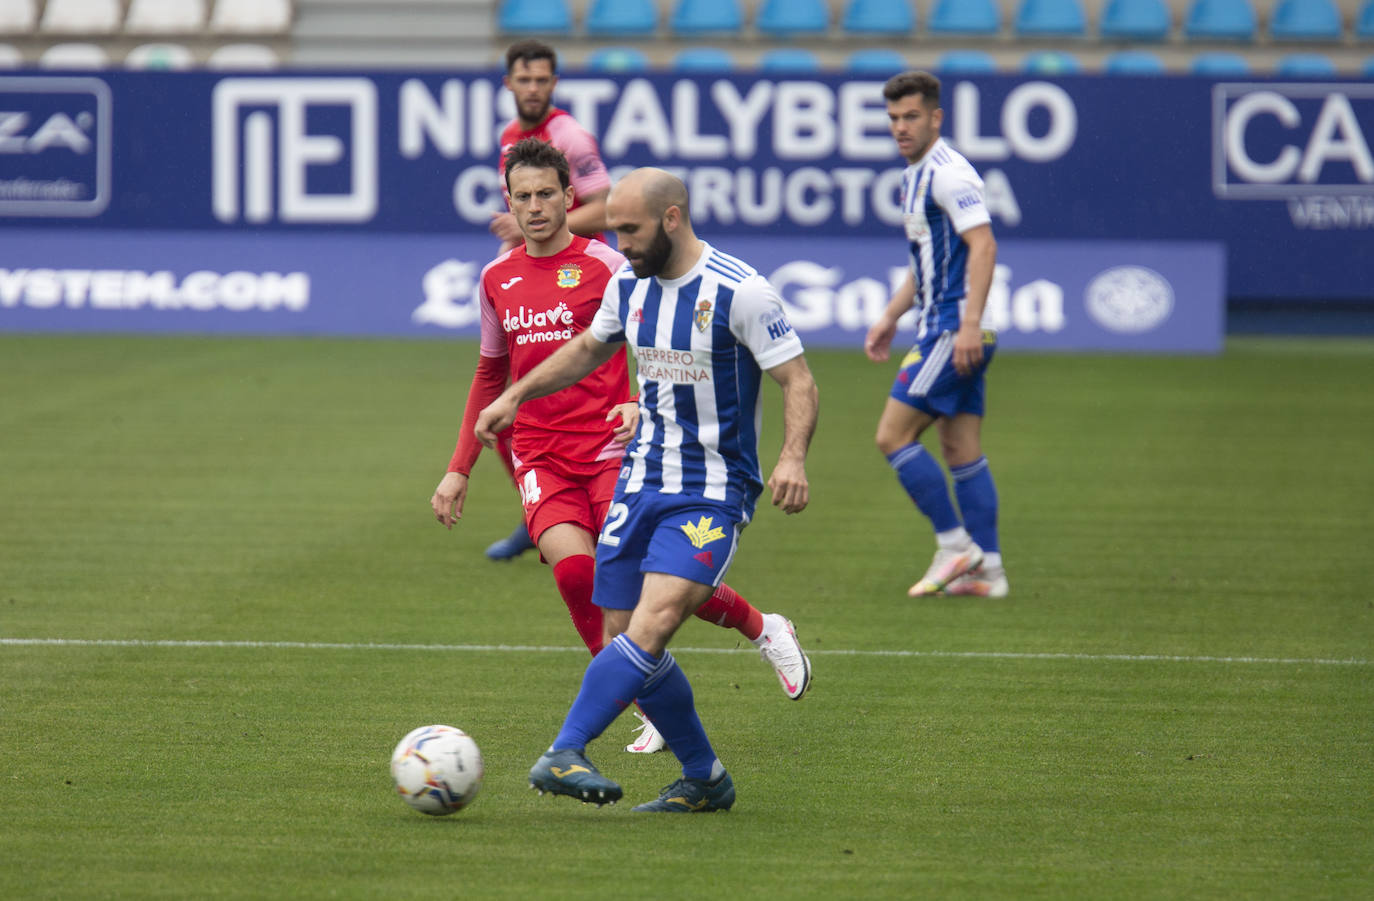 Ambos equipos se enfrentan en una jornada de Segunda División.